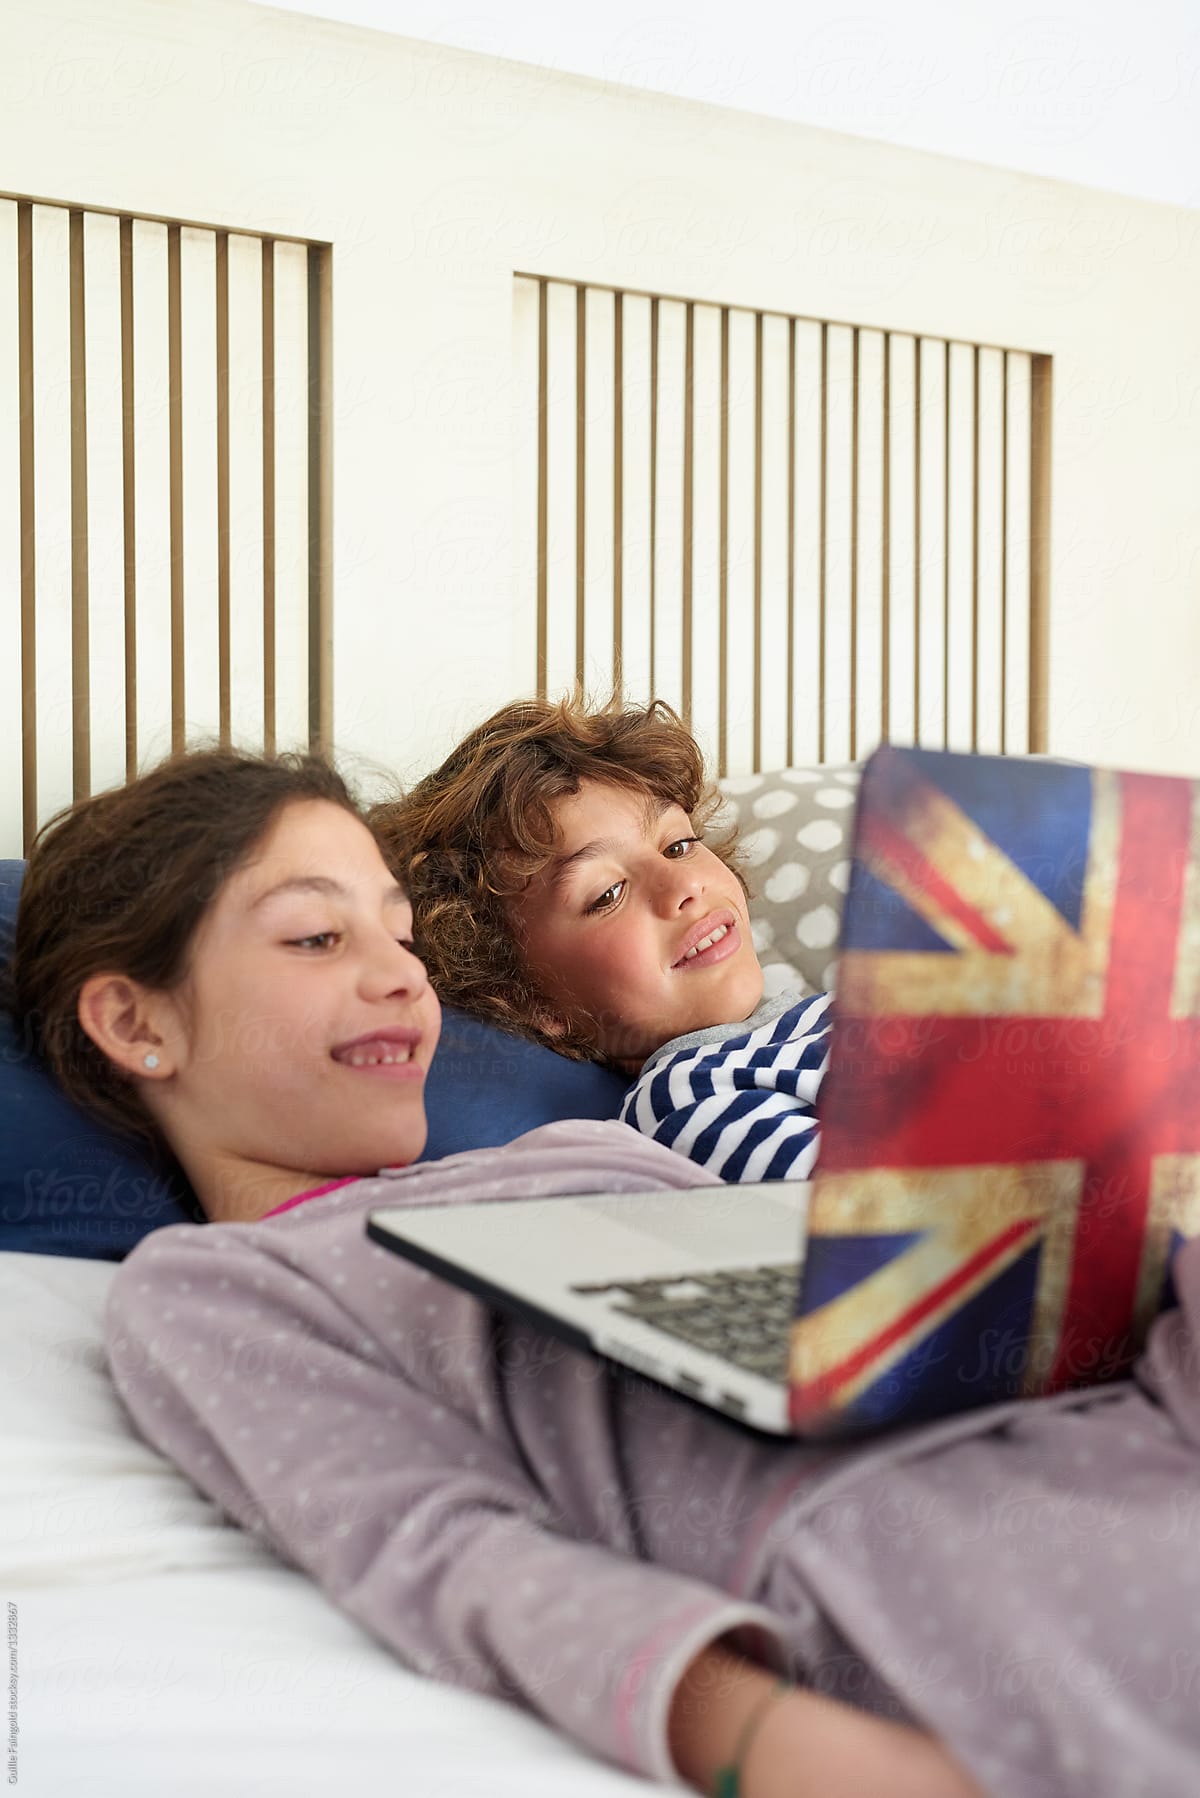 Siblings watching cartoons on laptop